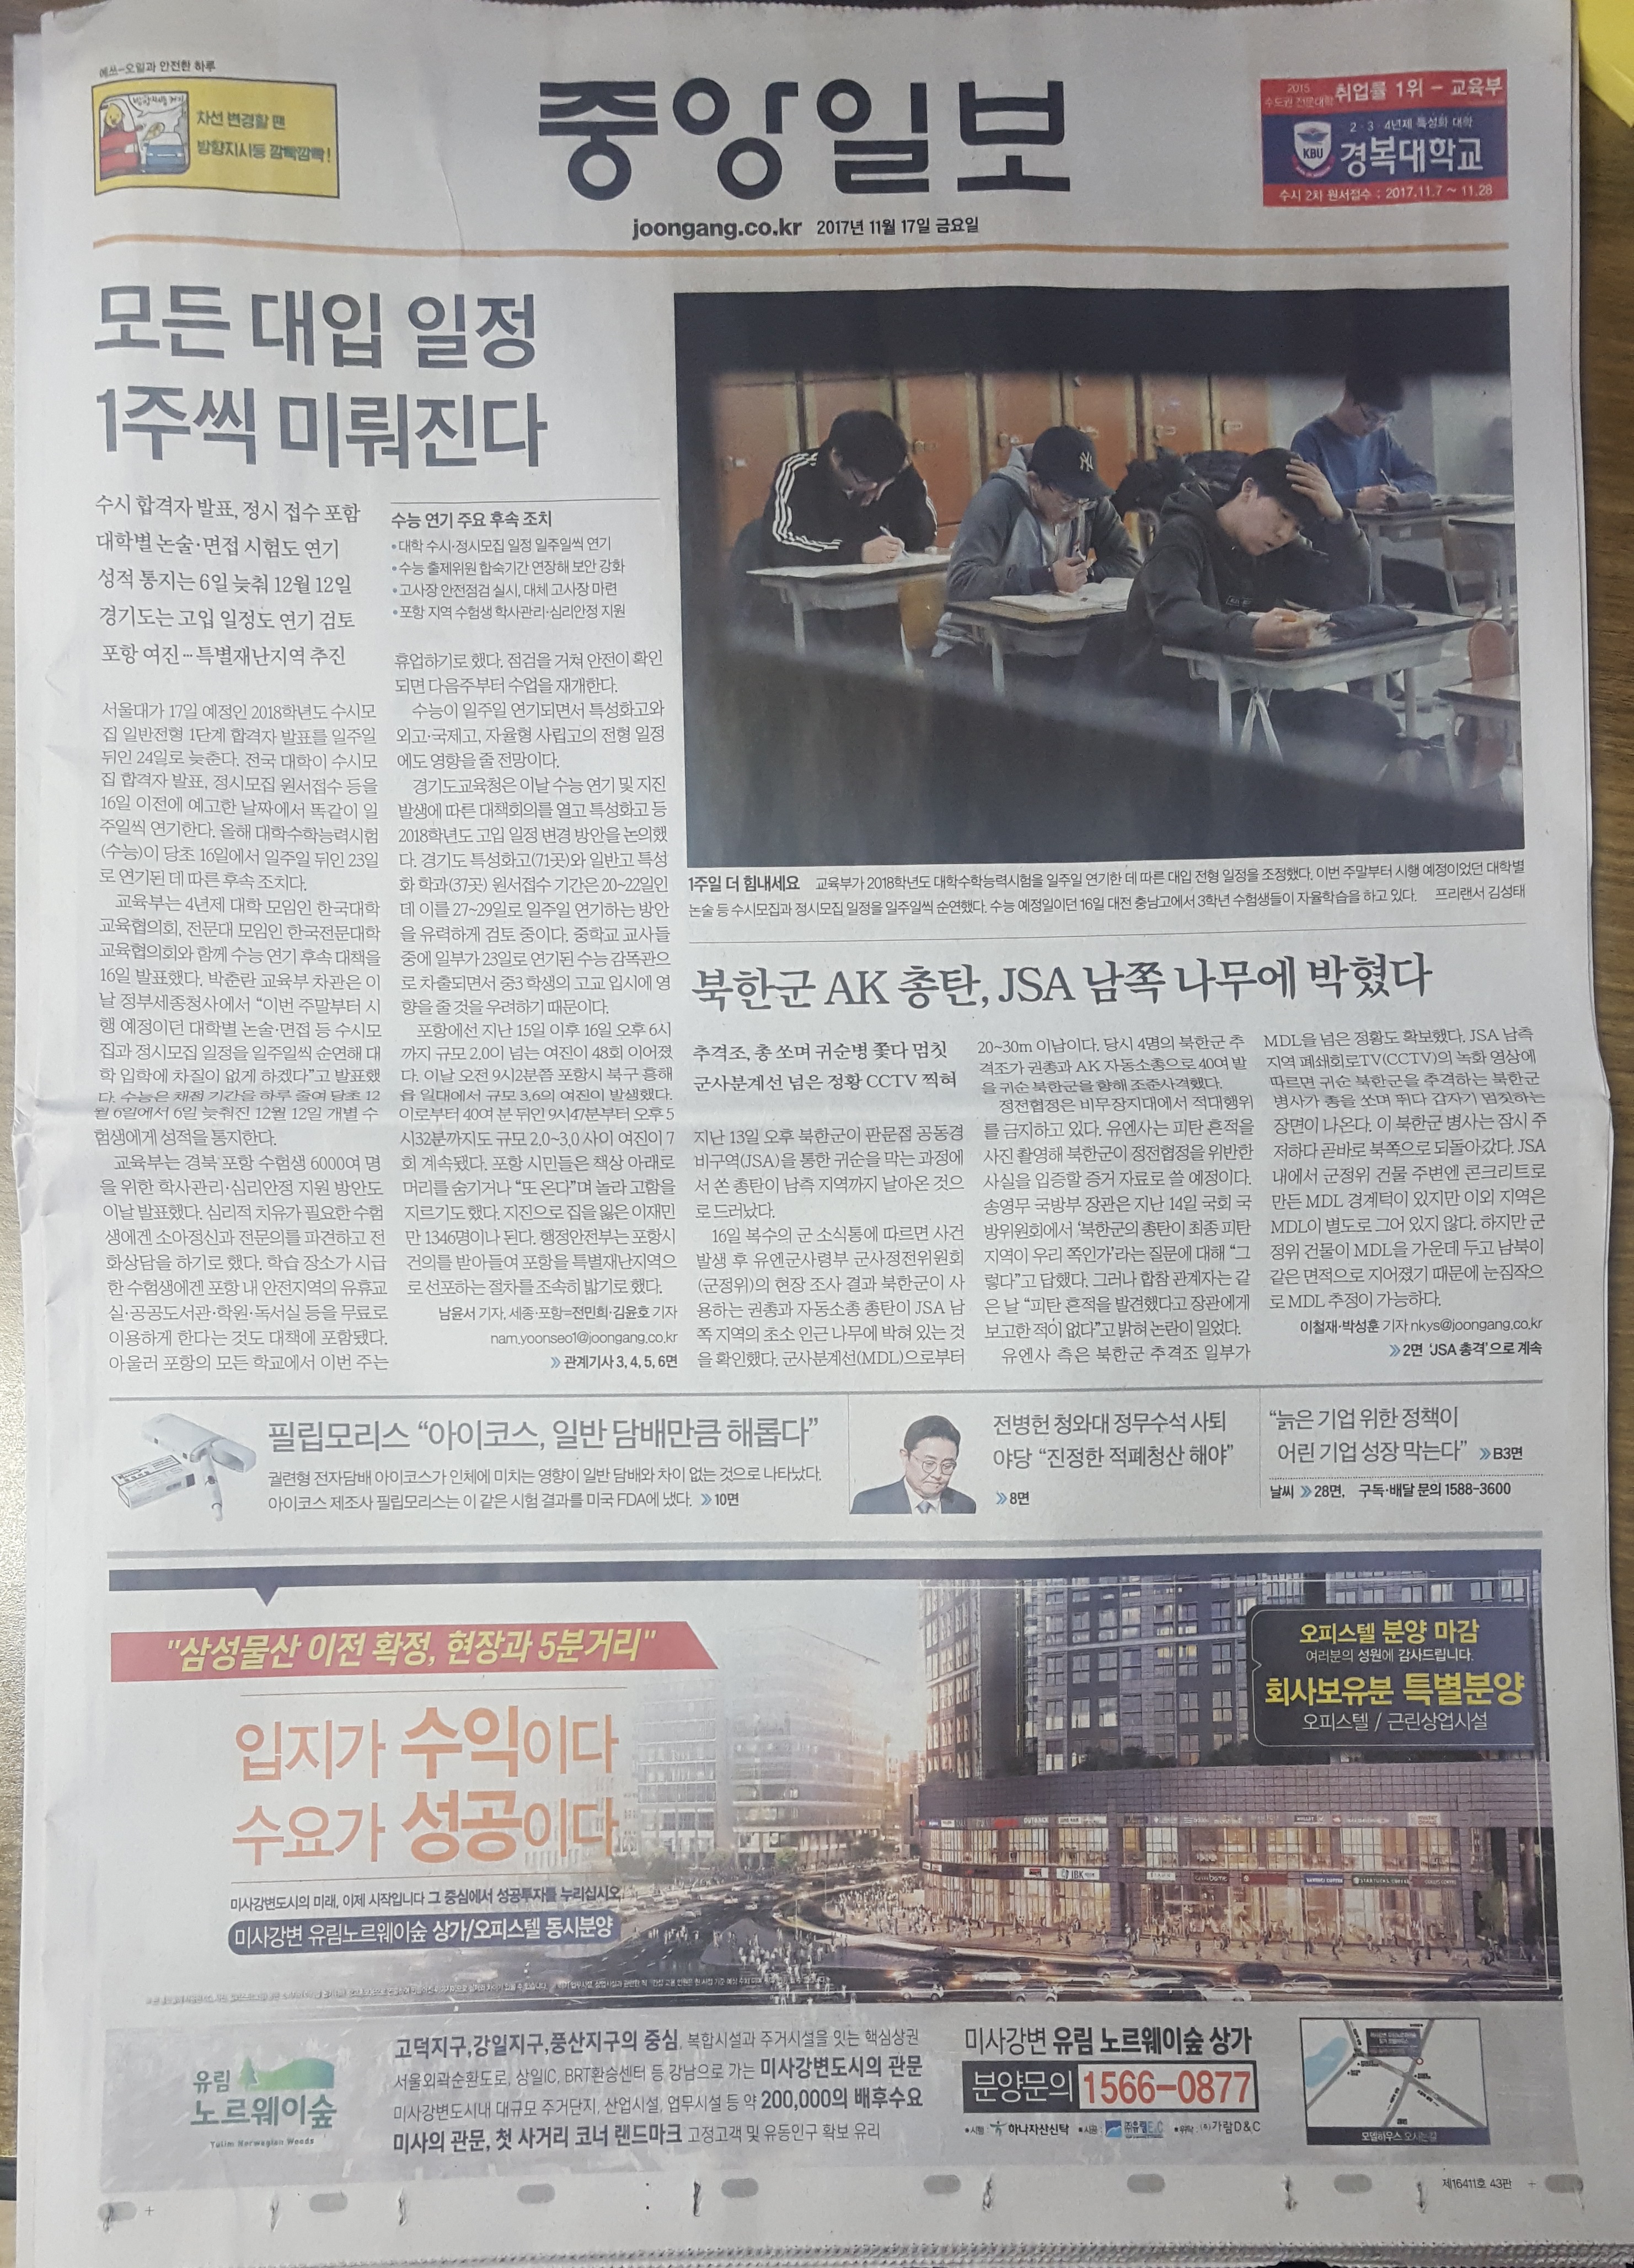 1월 17일 중앙일보 1 미사강변 유림노르웨이숲 - 4단통.jpg